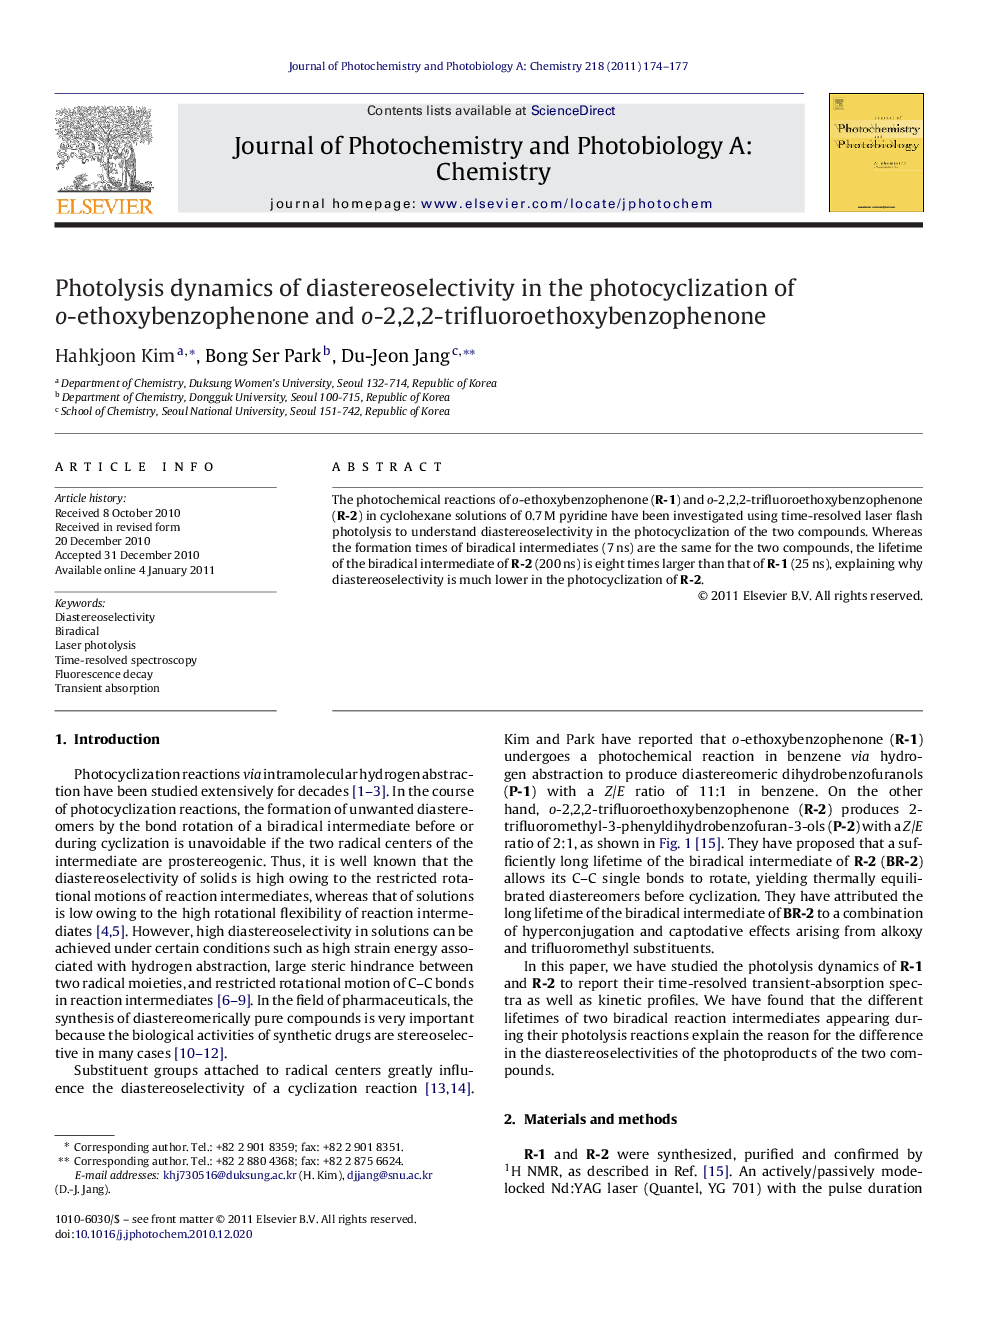 Photolysis dynamics of diastereoselectivity in the photocyclization of o-ethoxybenzophenone and o-2,2,2-trifluoroethoxybenzophenone